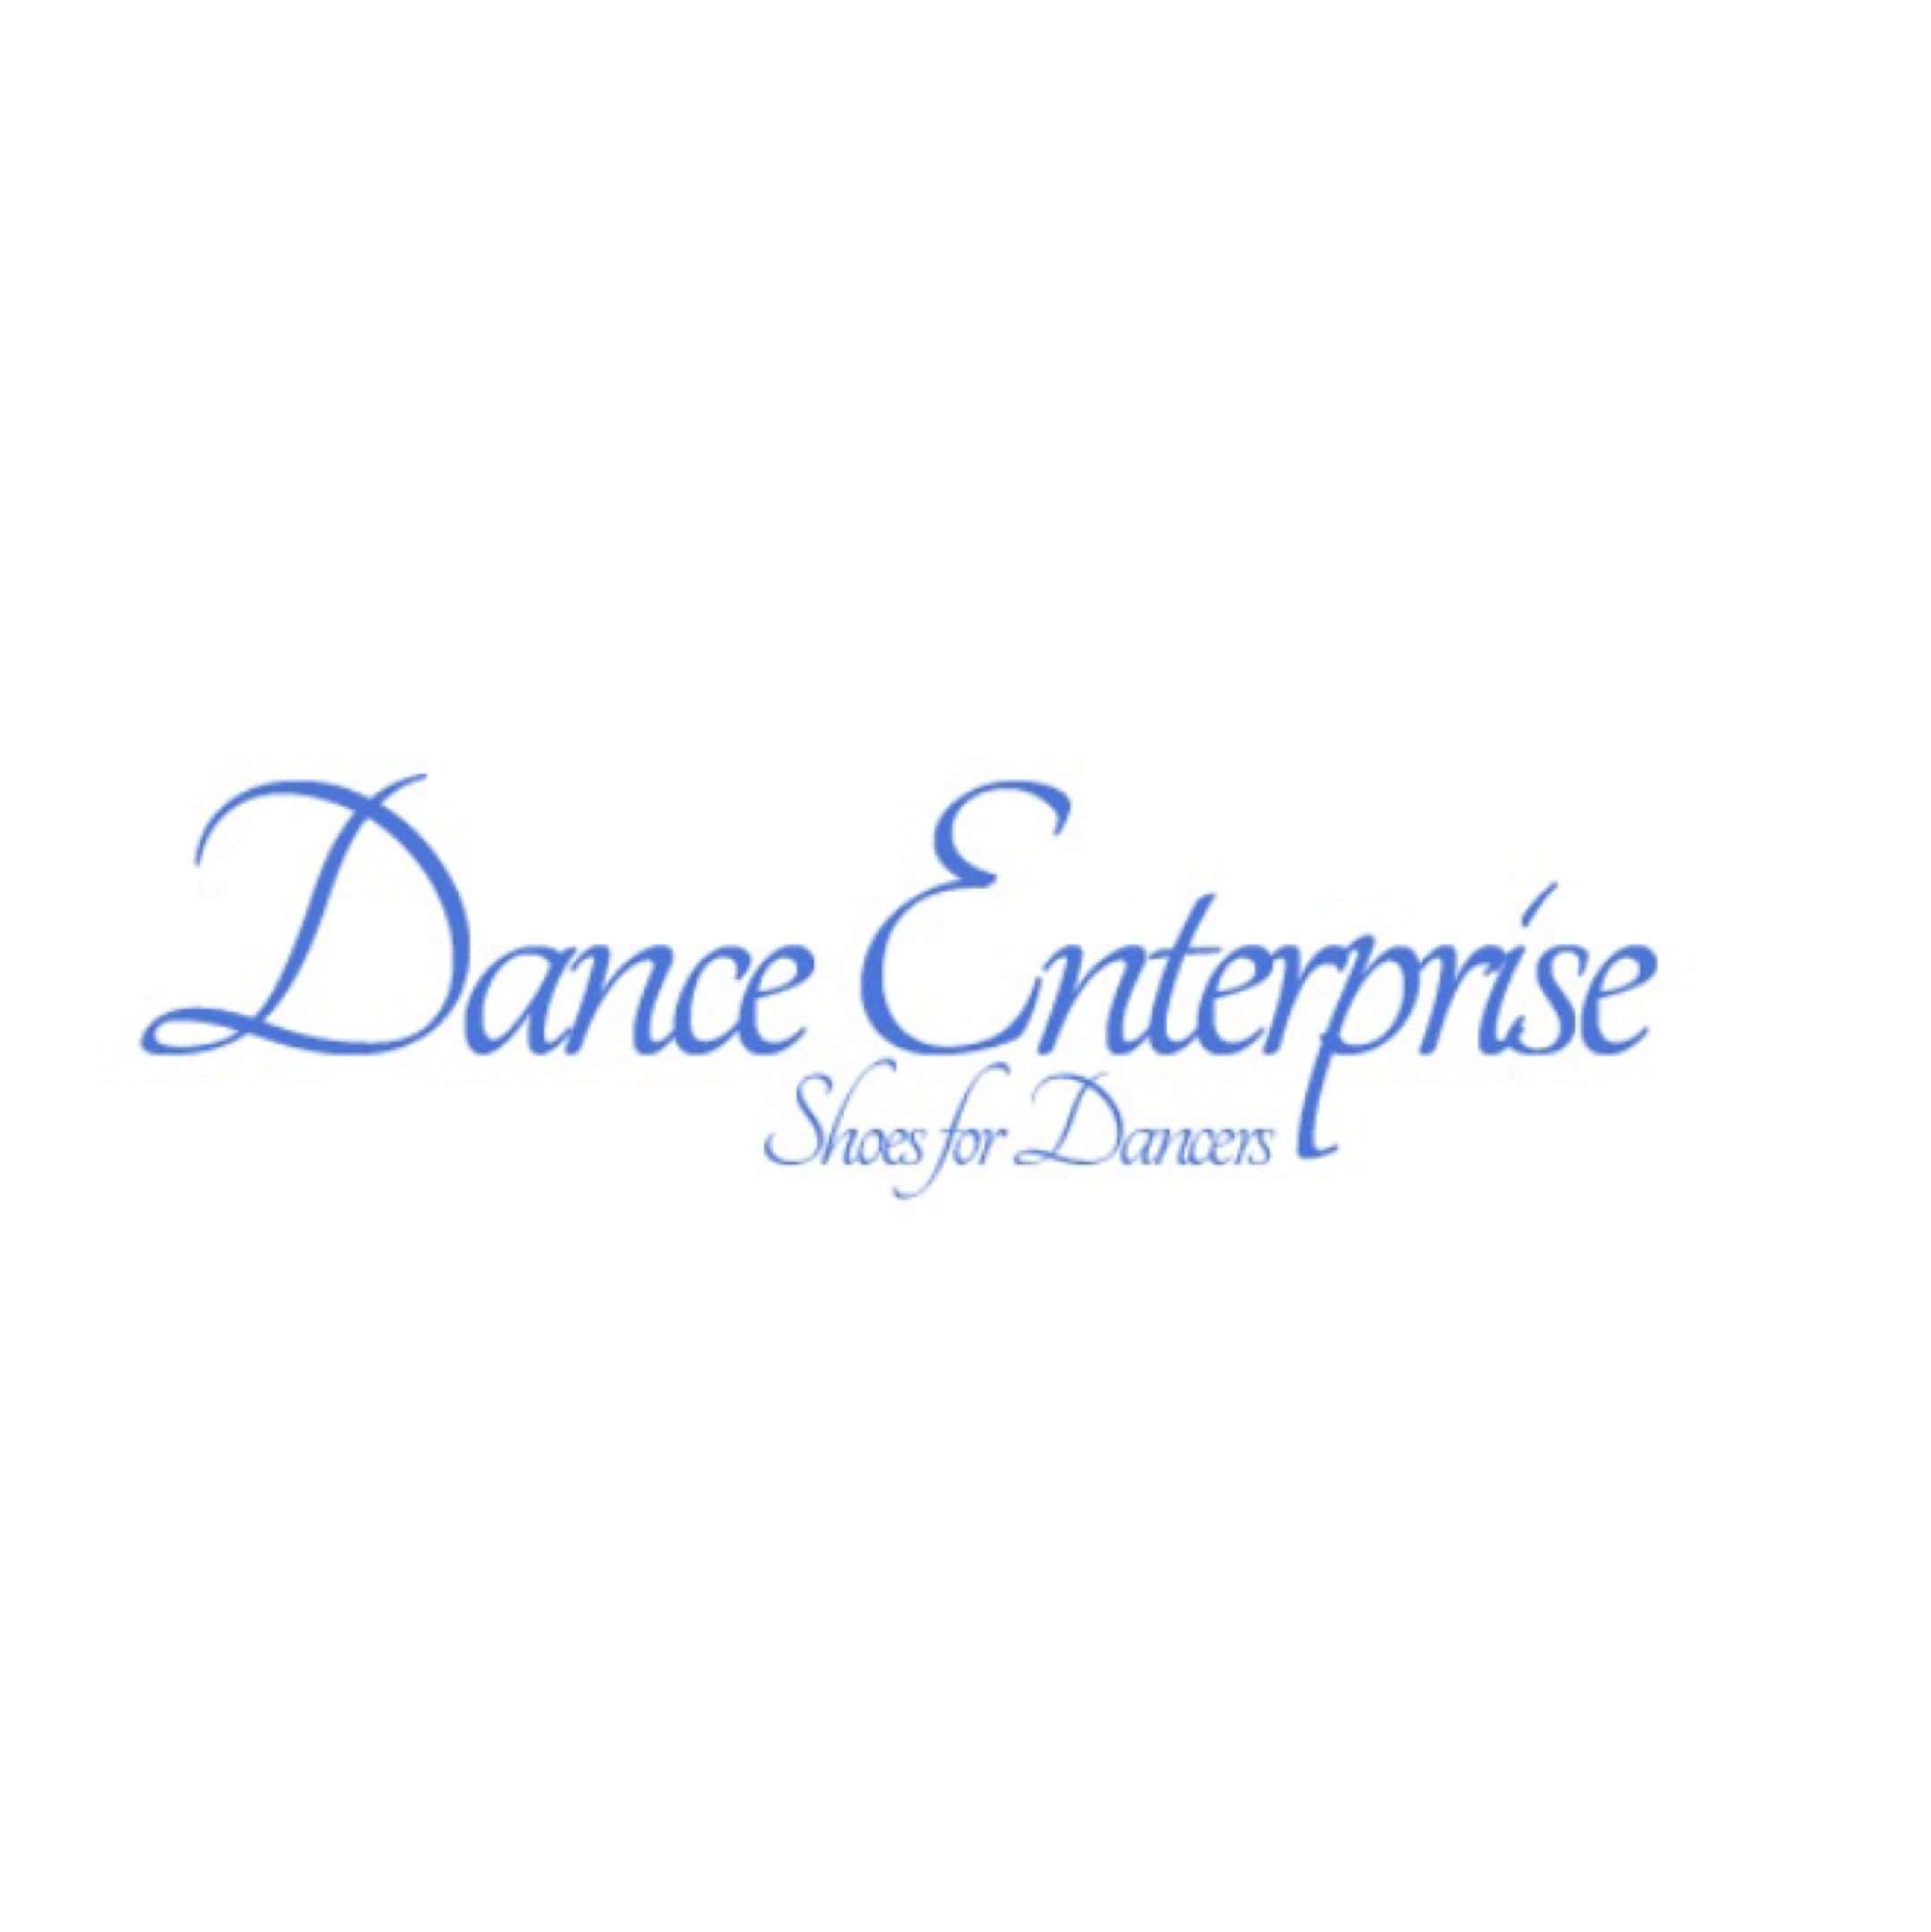 (c) Danceenterprise.co.uk